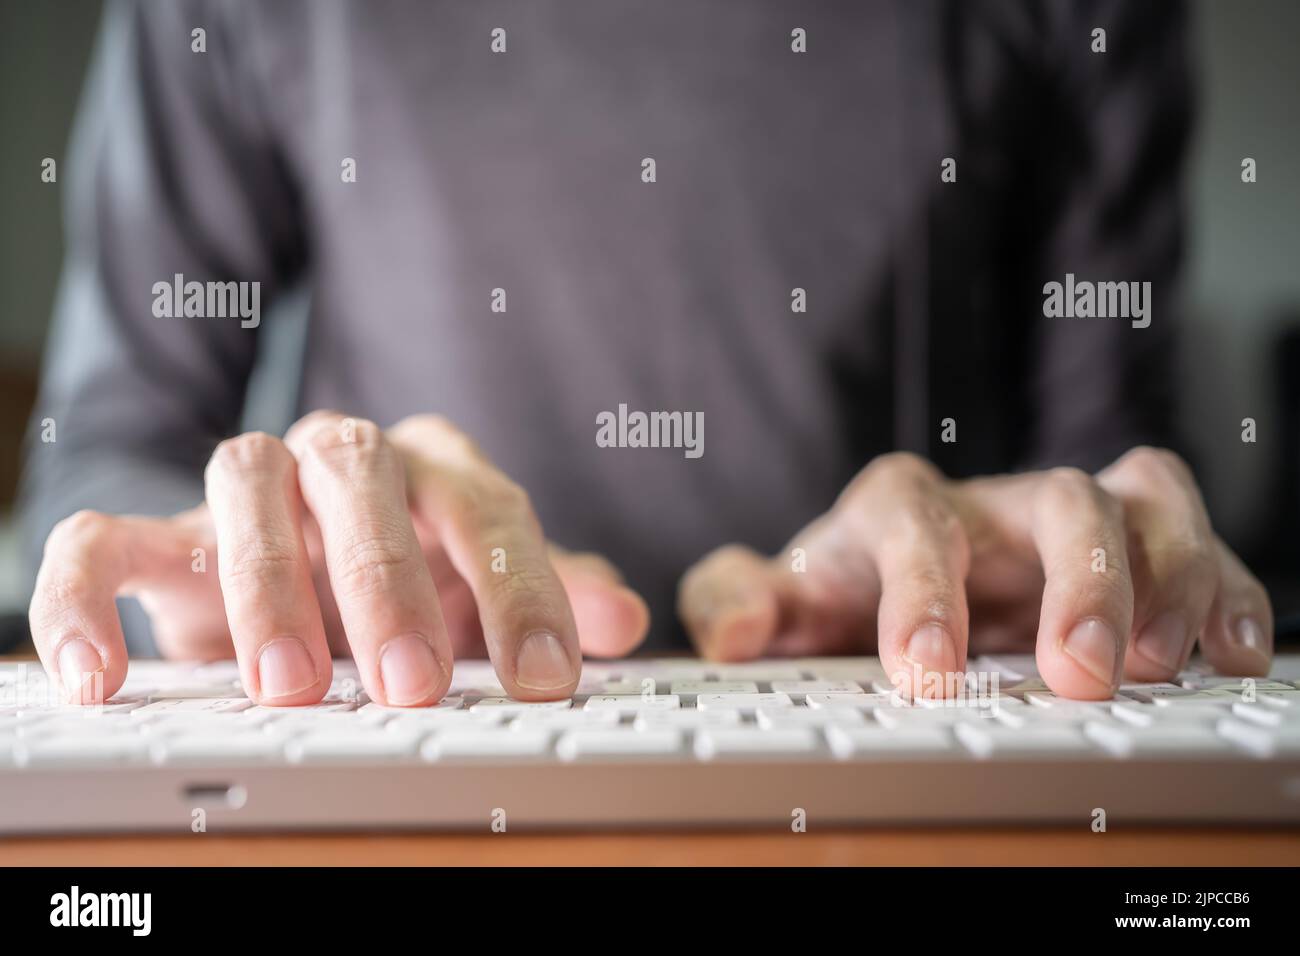 Un homme tapant sur un clavier d'ordinateur bas profil Banque D'Images